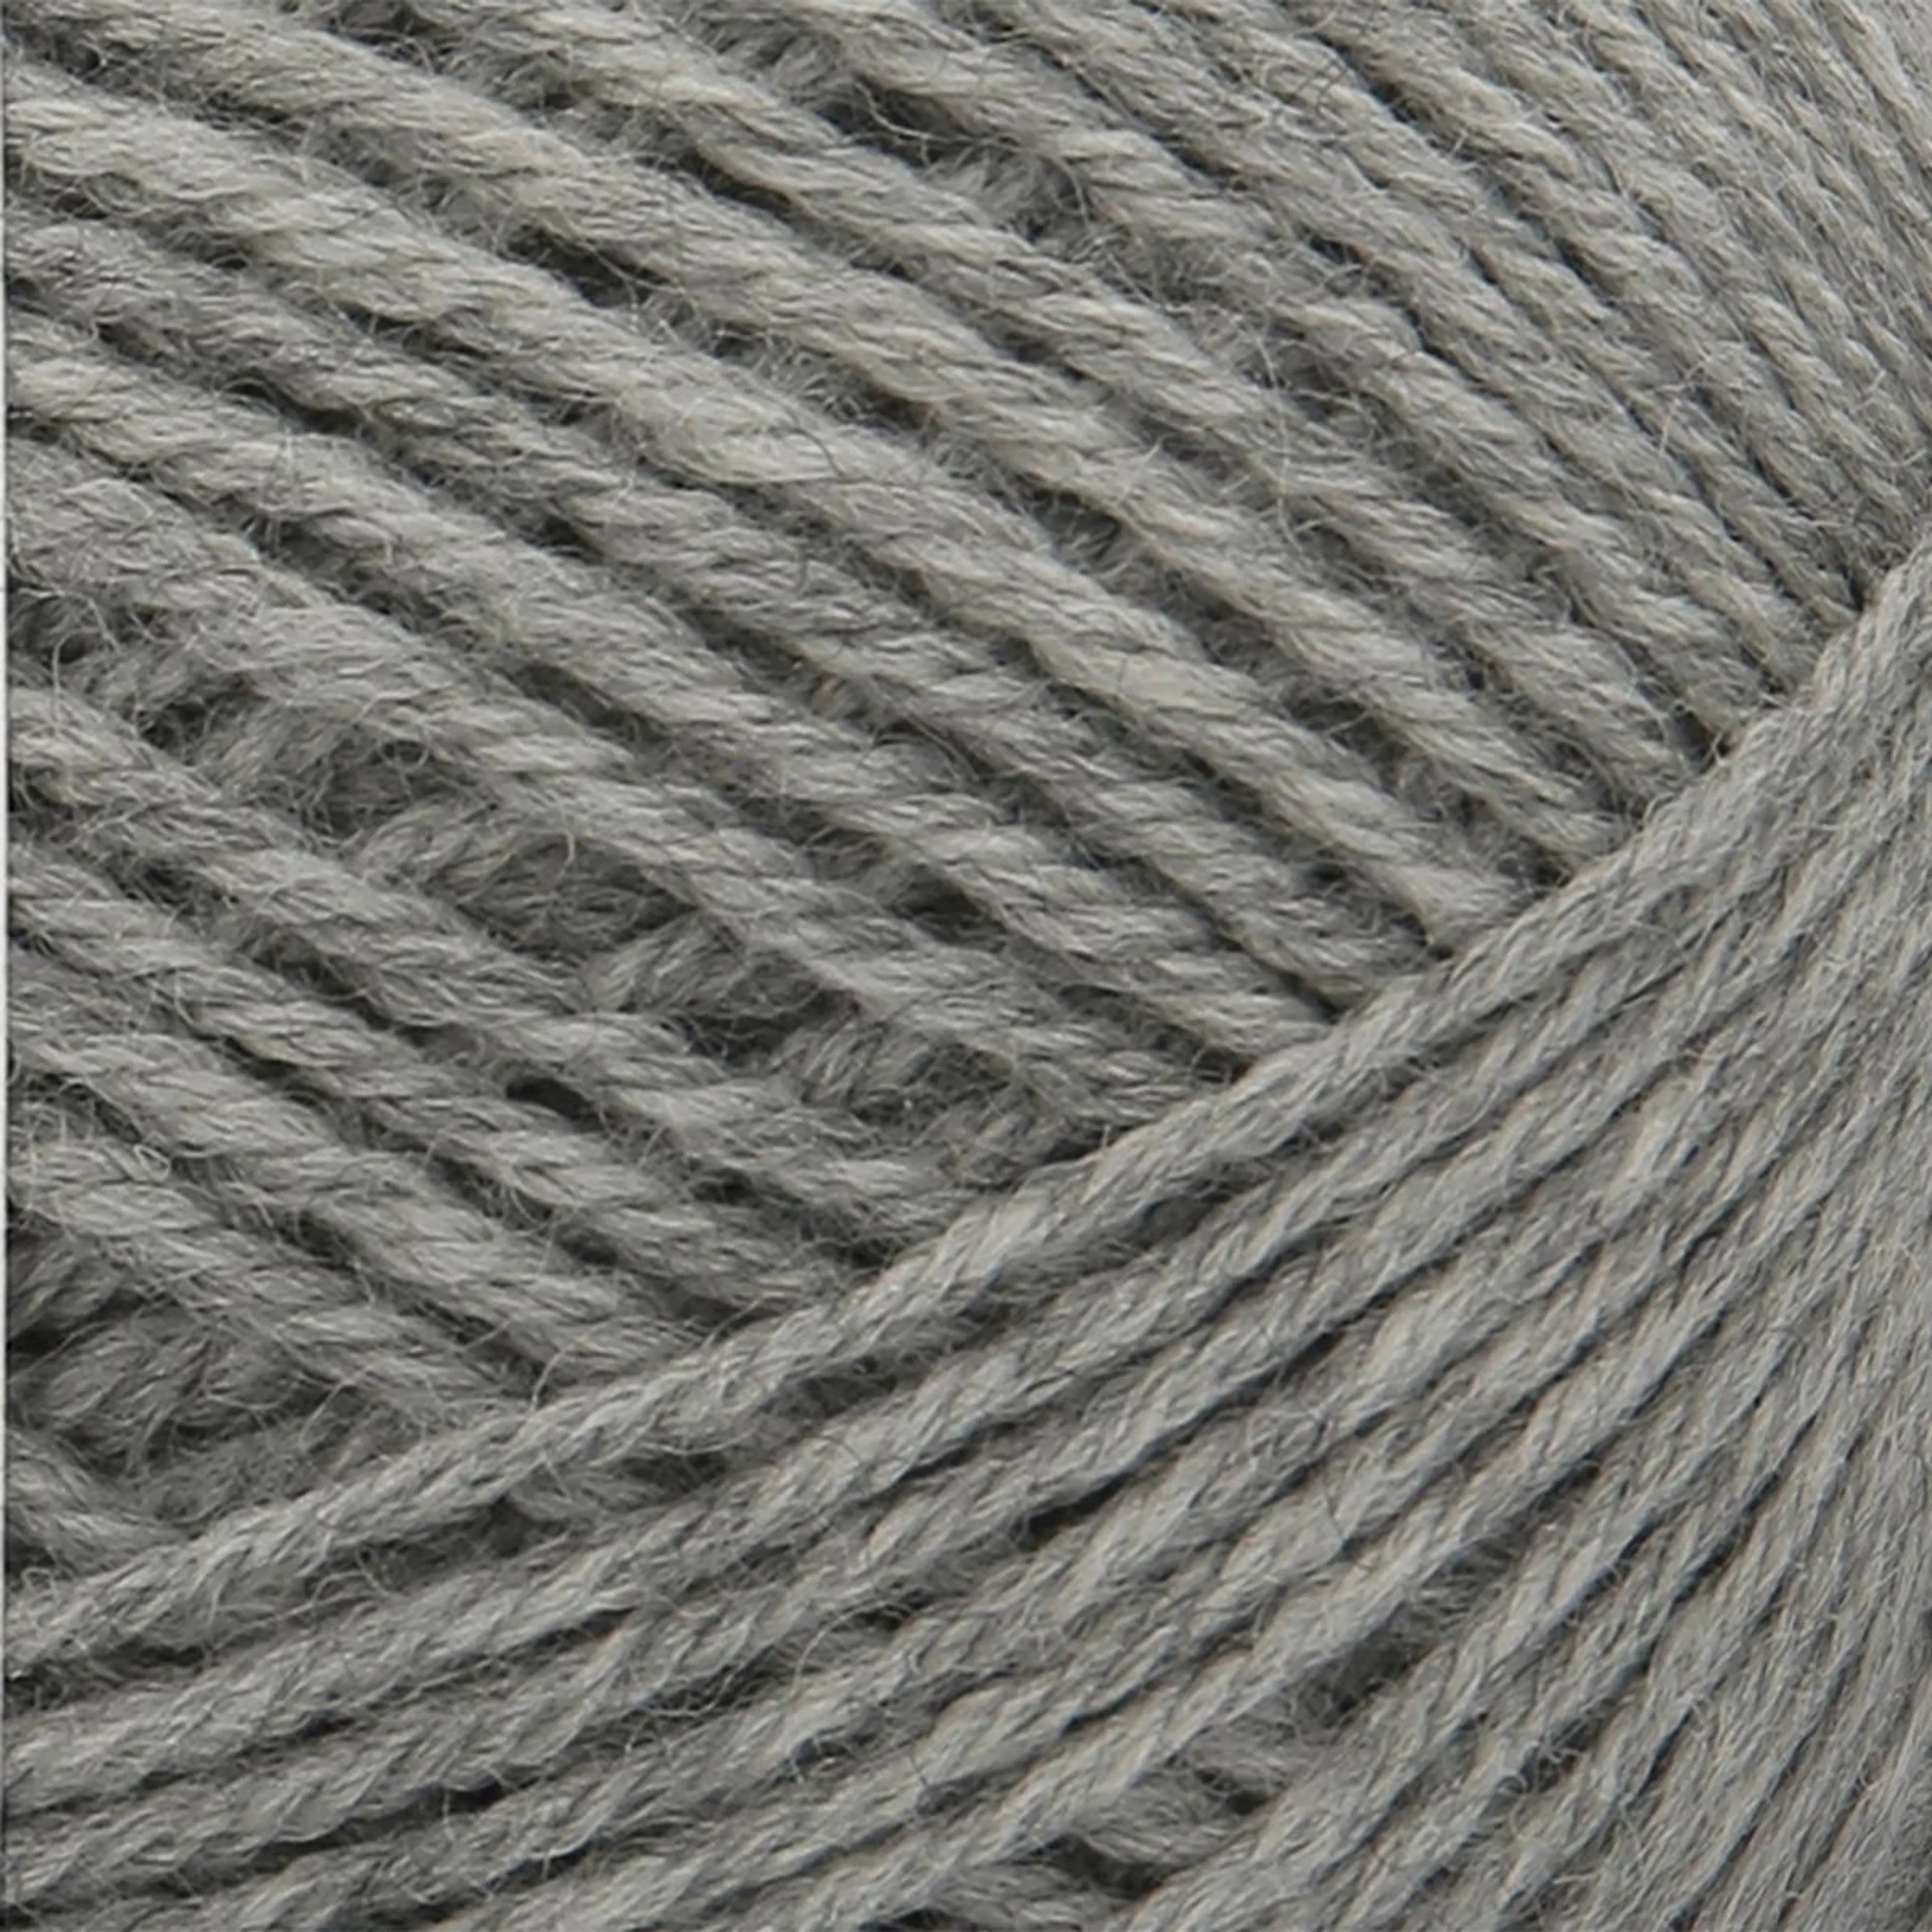 Novita Lanka Wonder Wool DK 100g 043